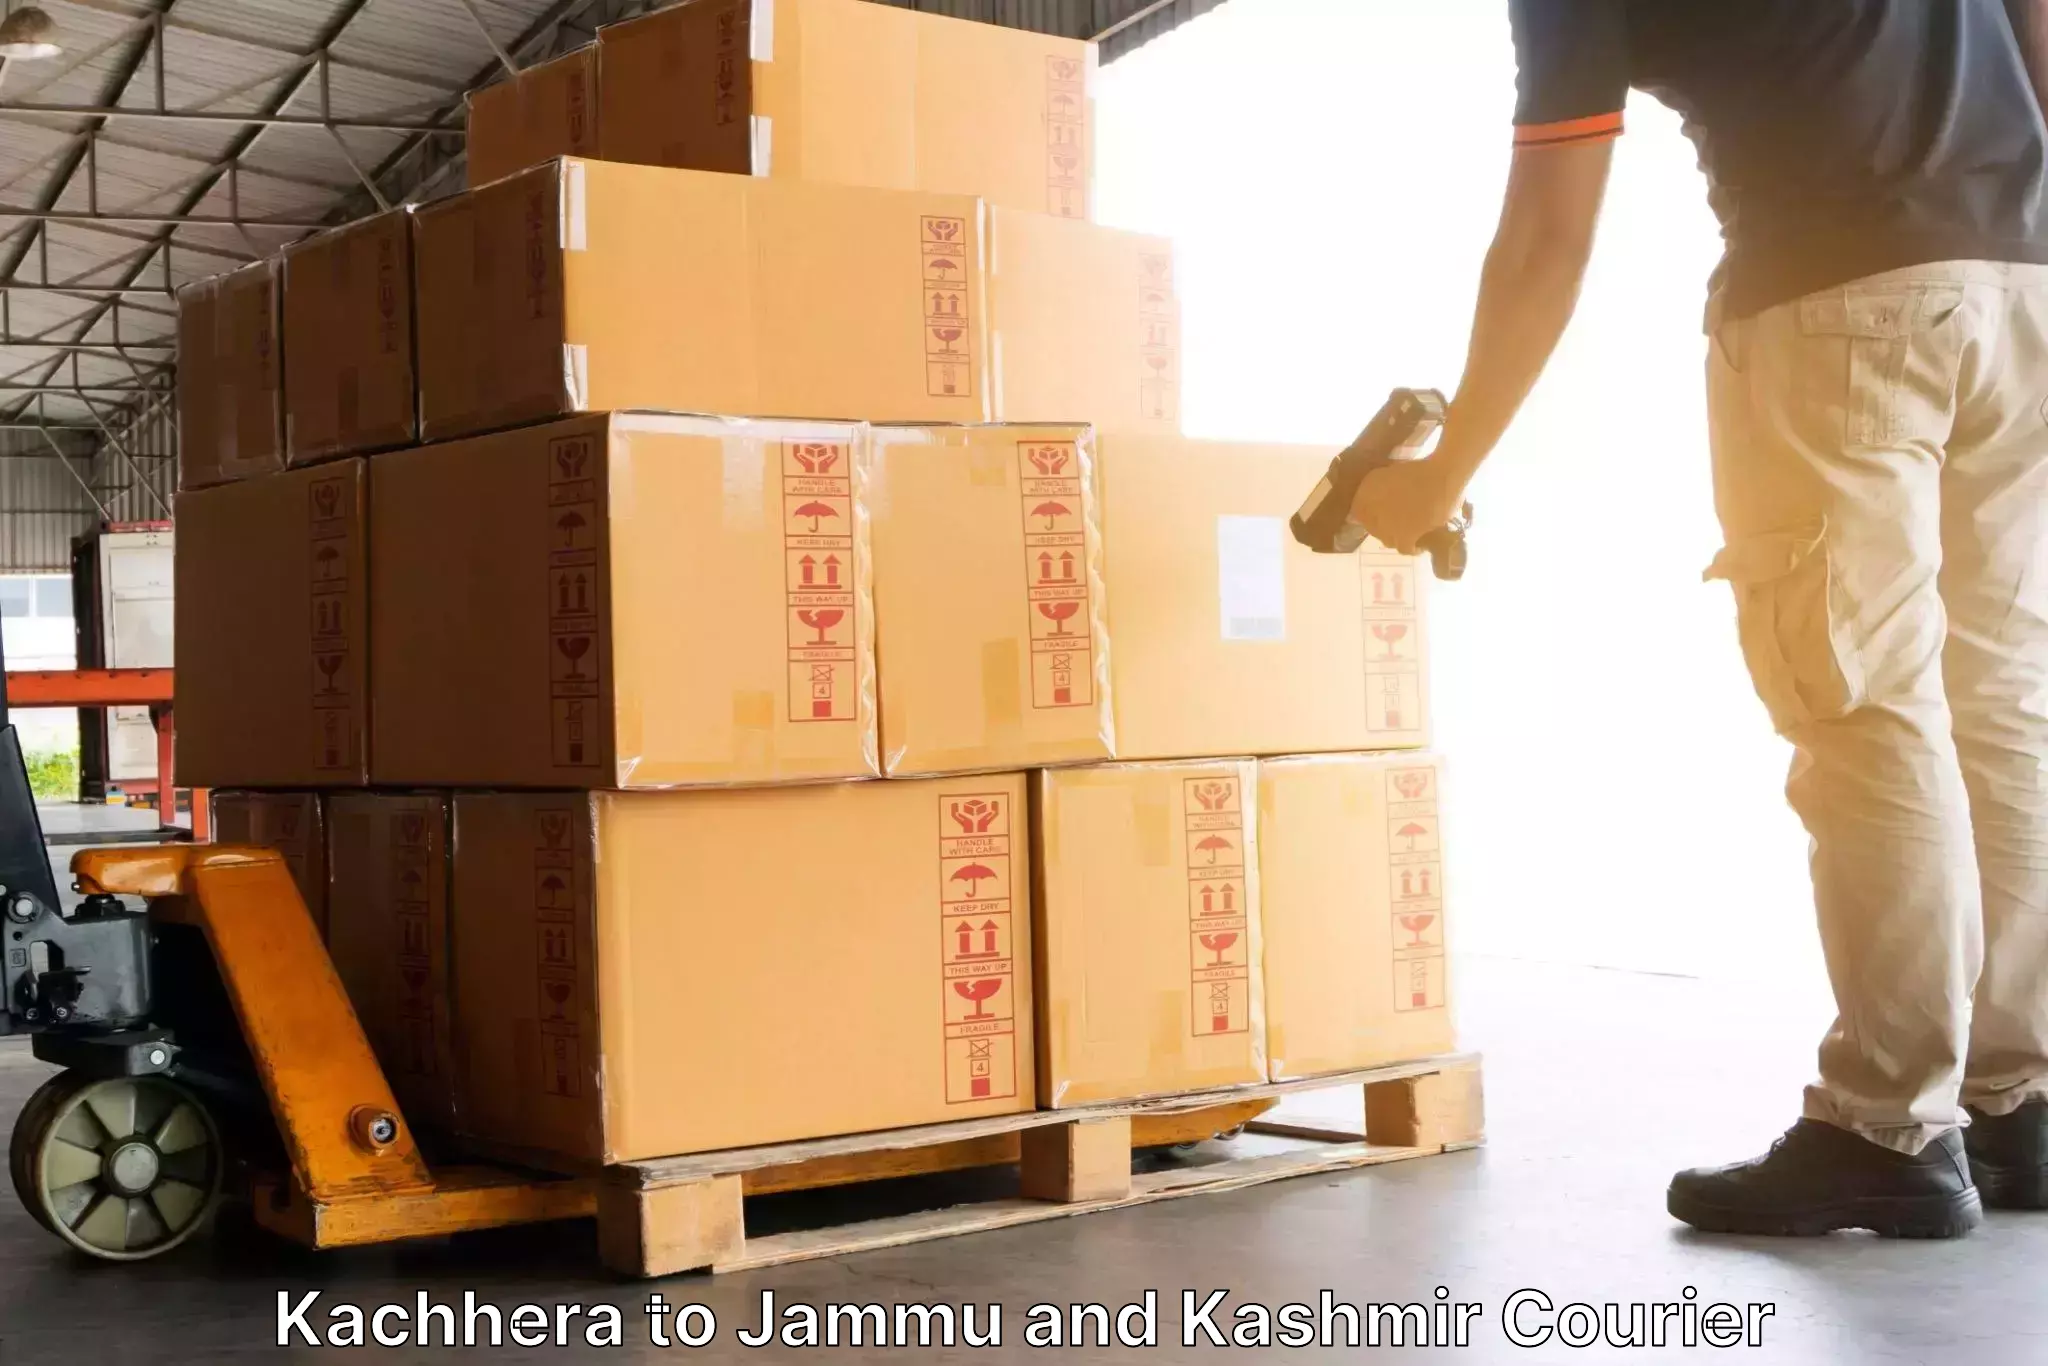 Bulk courier orders Kachhera to Shopian